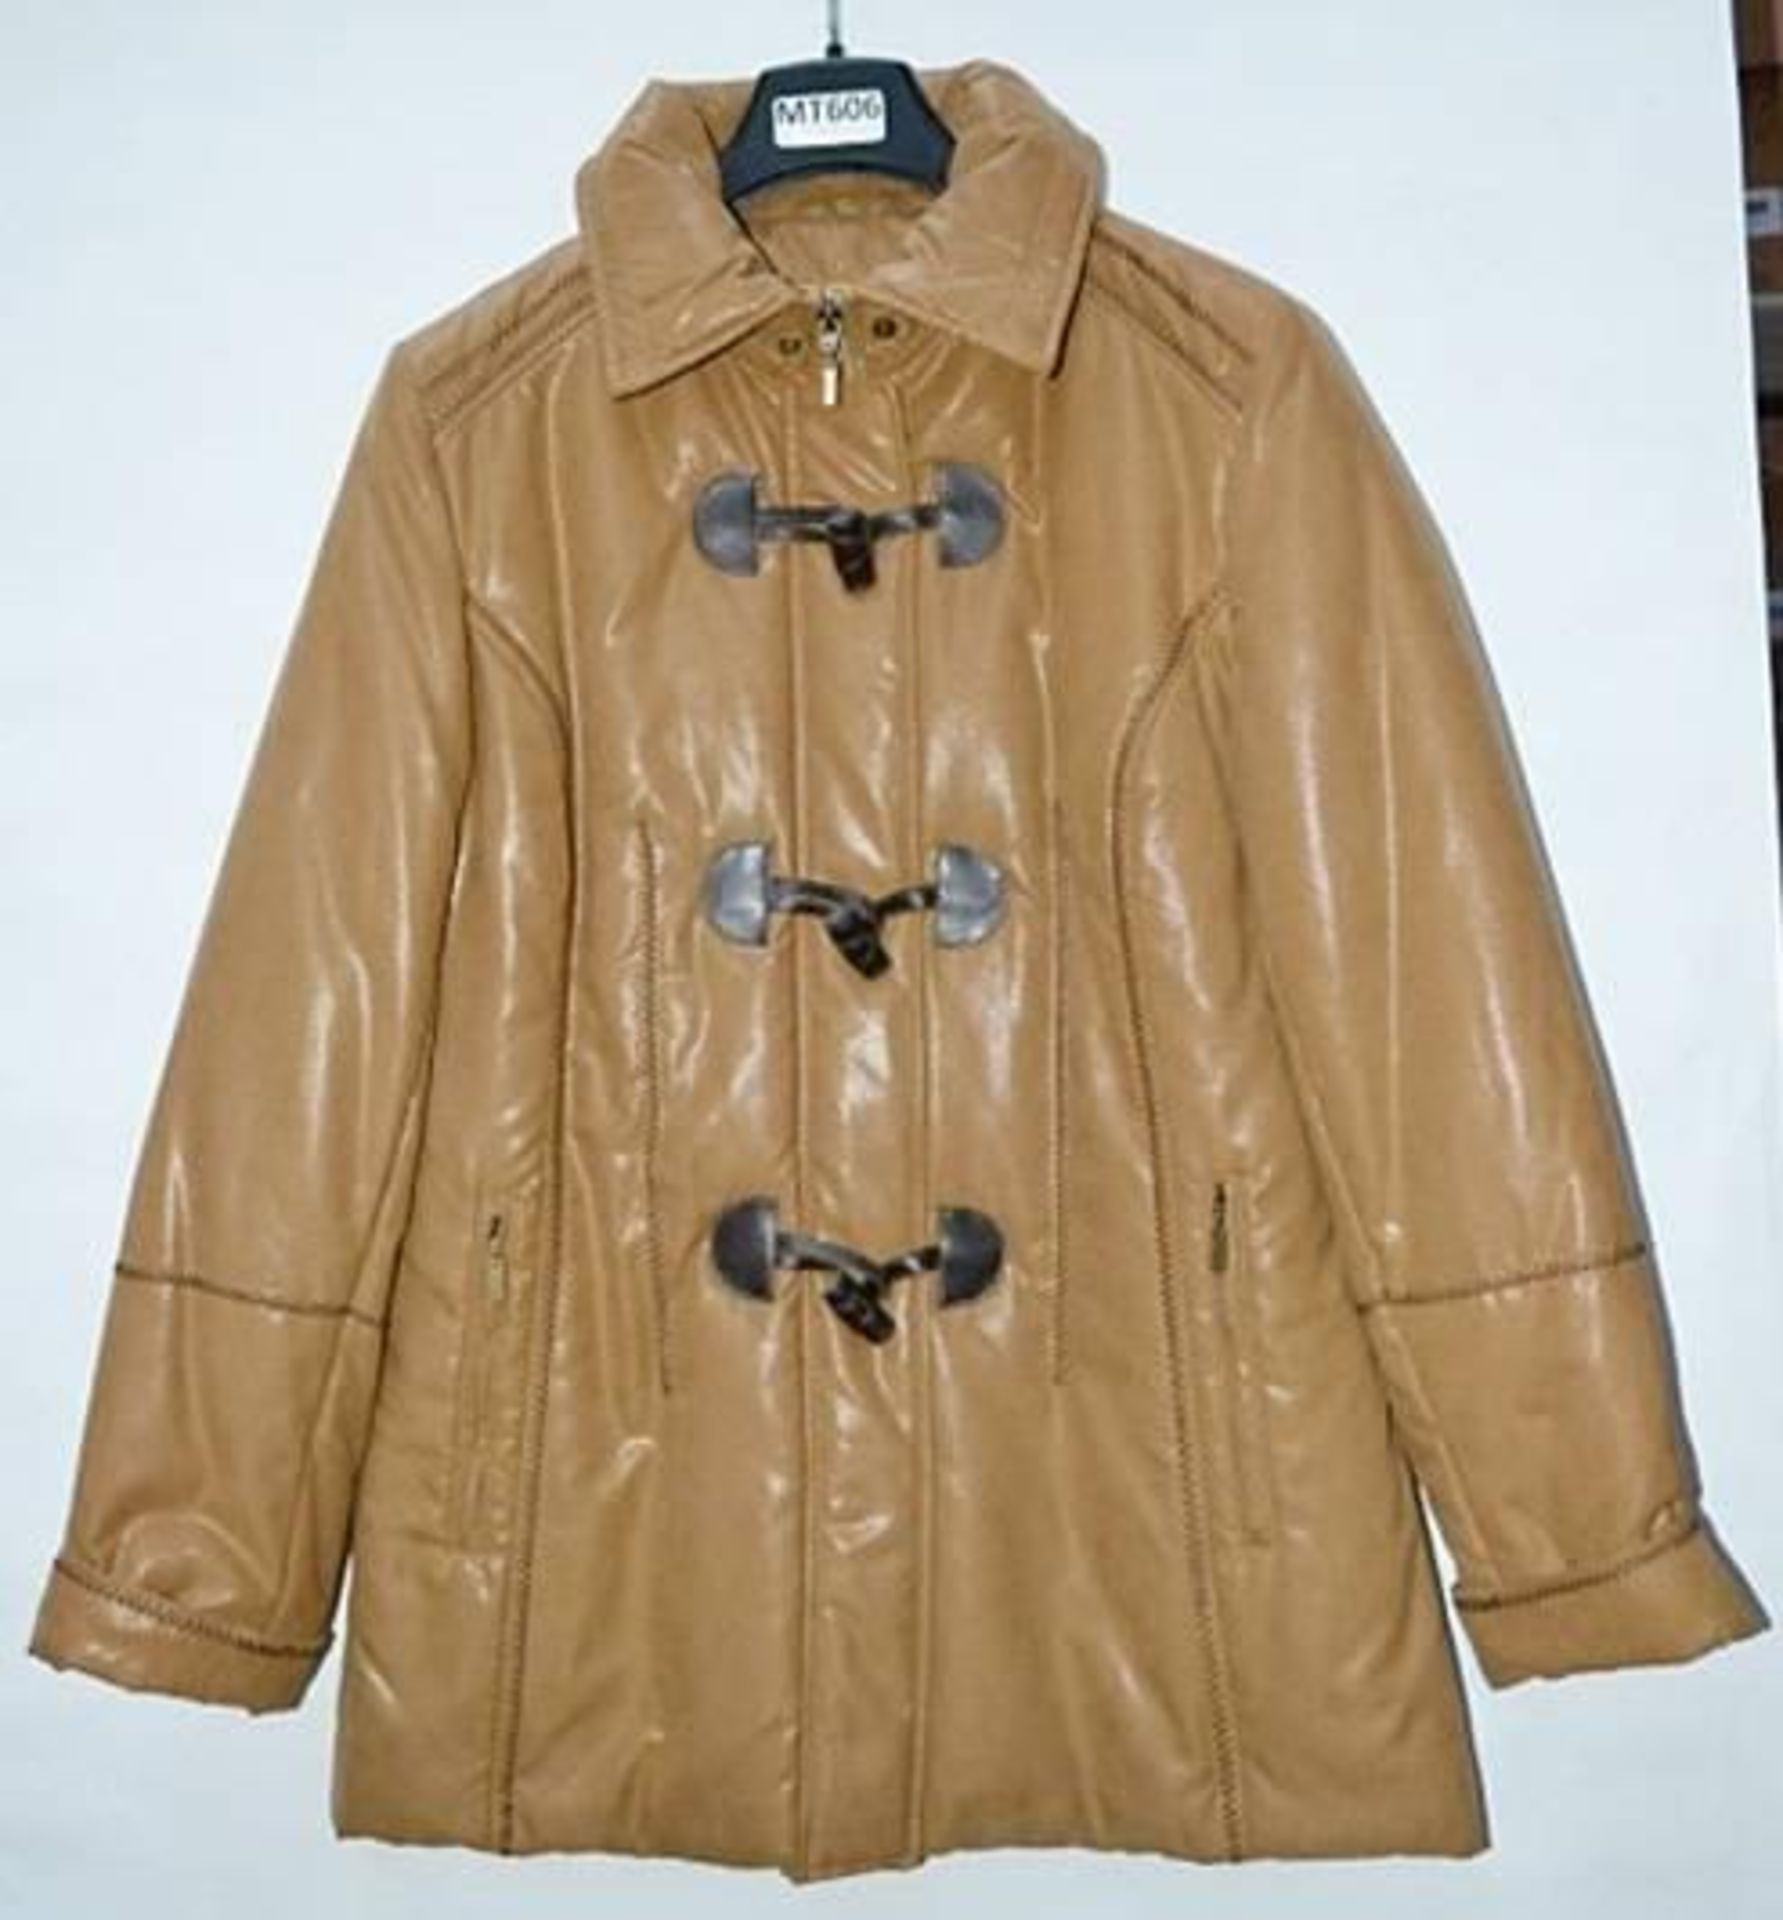 1 x Steilmann Kirsten Womens Padded Winter Coat In A Tan Faux Leather - Size 12 - CL210 - Ref MT606